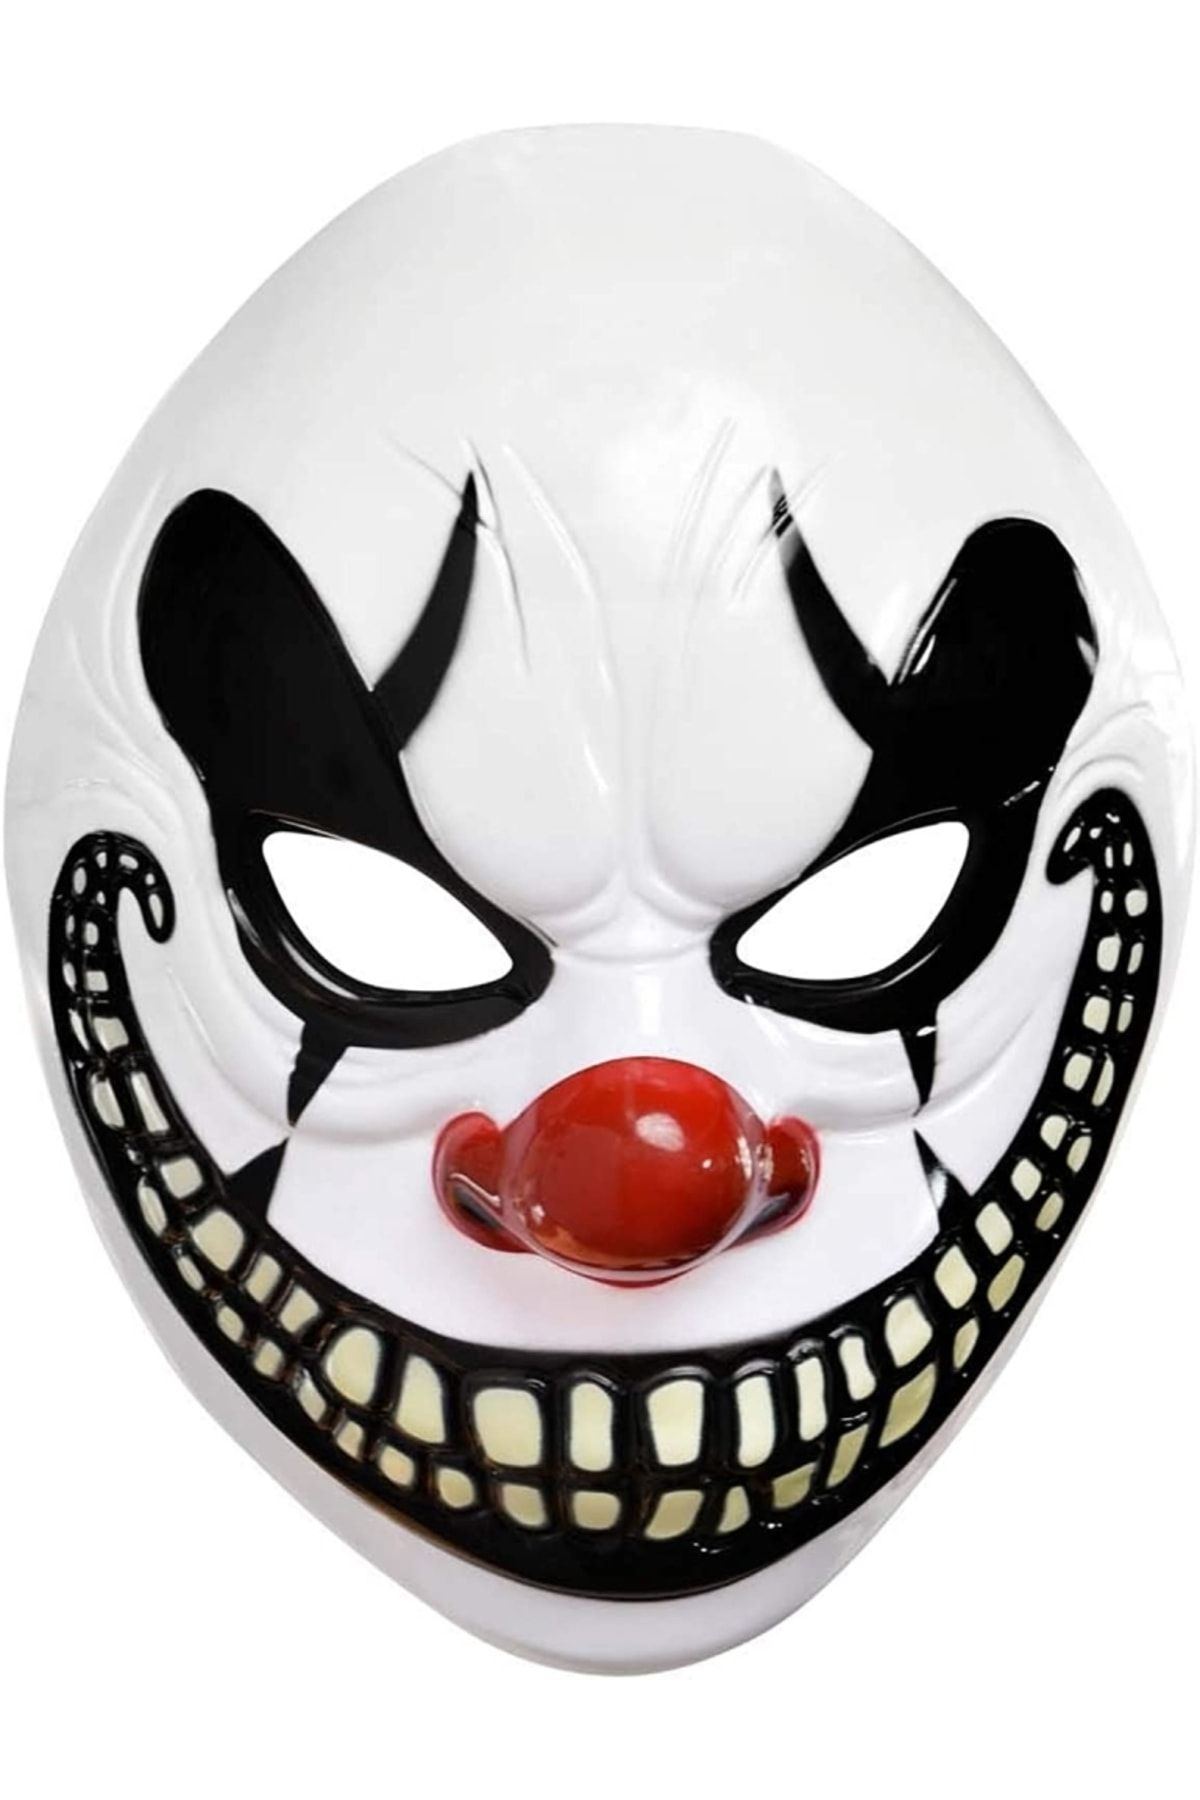 Toptan Bulurum Freak Show Joker Maske 26x16 cm